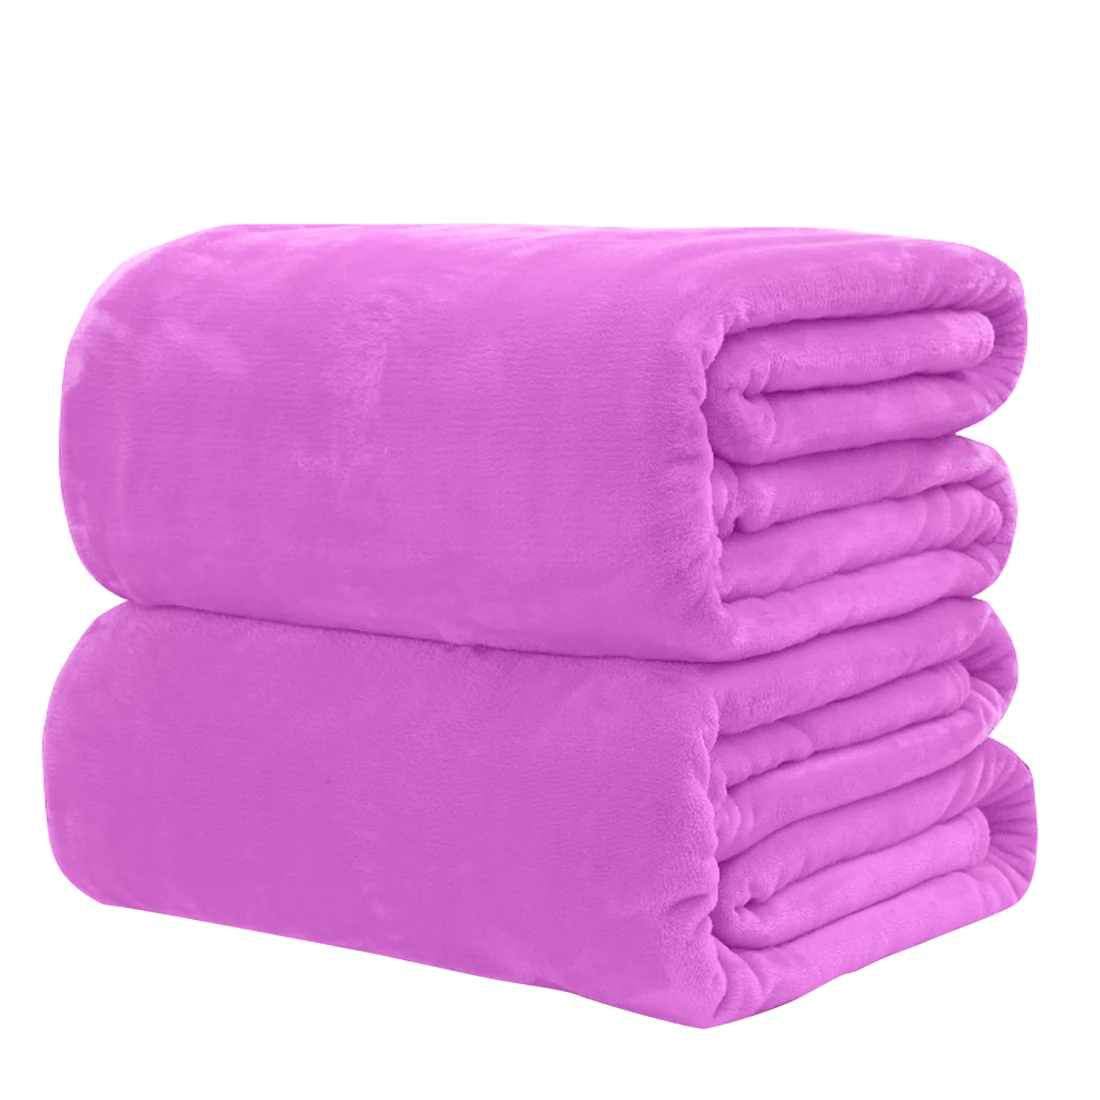 Супер теплое мягкое одеяло s плед на диван/кровать/путешествия лоскутное одноцветное покрывало домашний текстиль Фланелевое утяжеленное одеяло - Цвет: purple